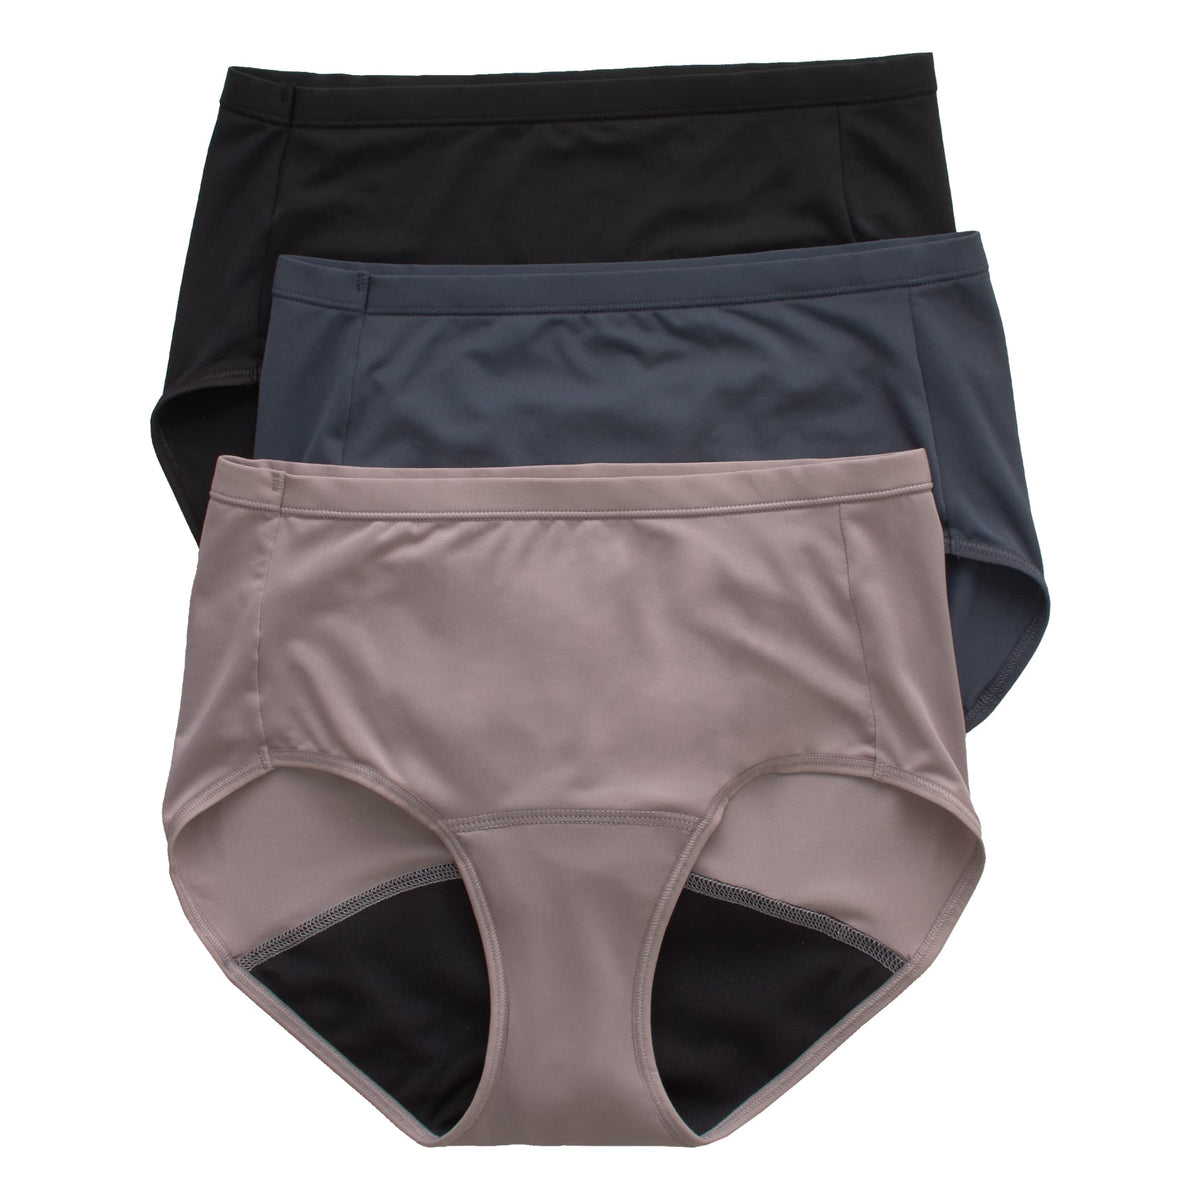 Hanes Comfort, Period. Women's Brief Period Underwear, Light Leaks, Black,  3-Pack